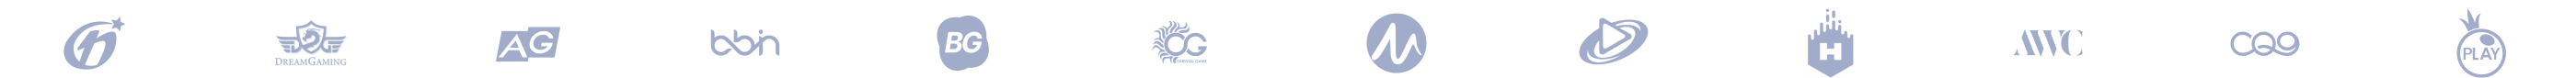 footer-logo.dc252dc2